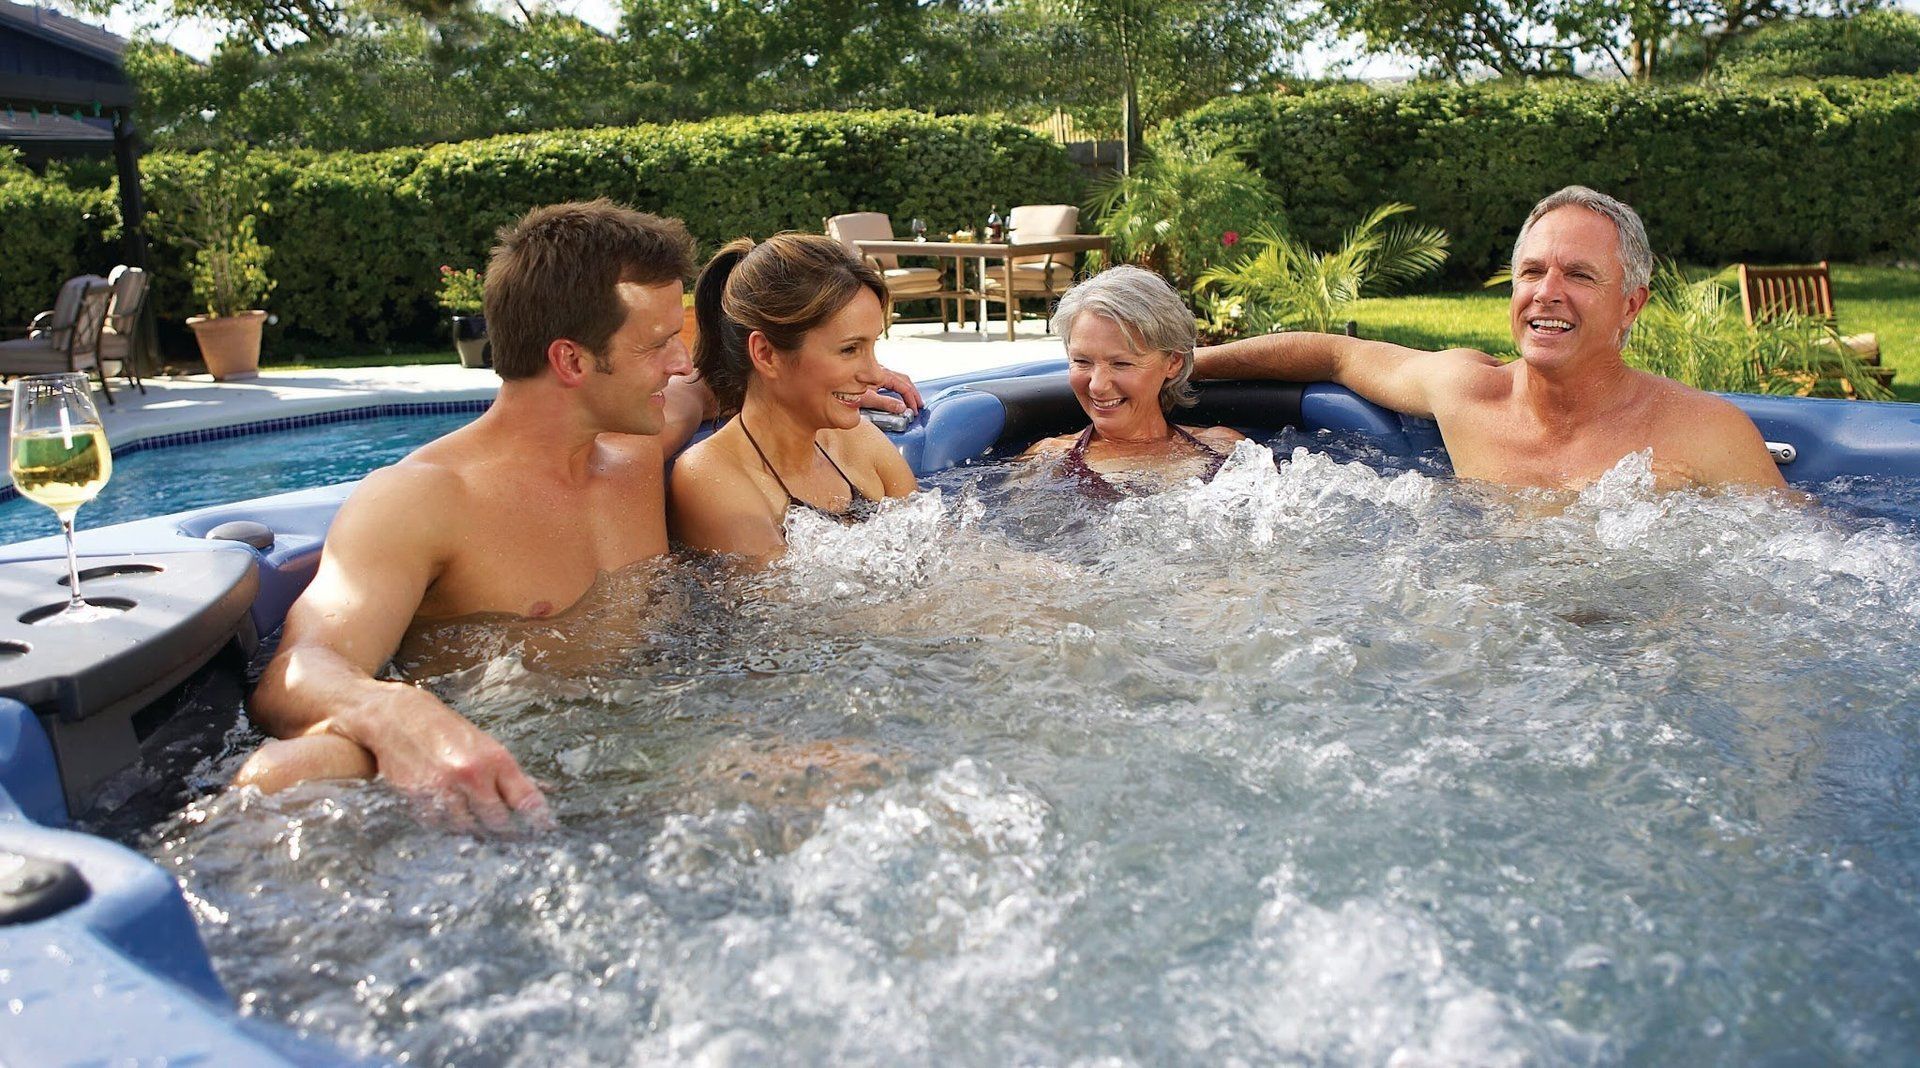 family enjoying hot tub together